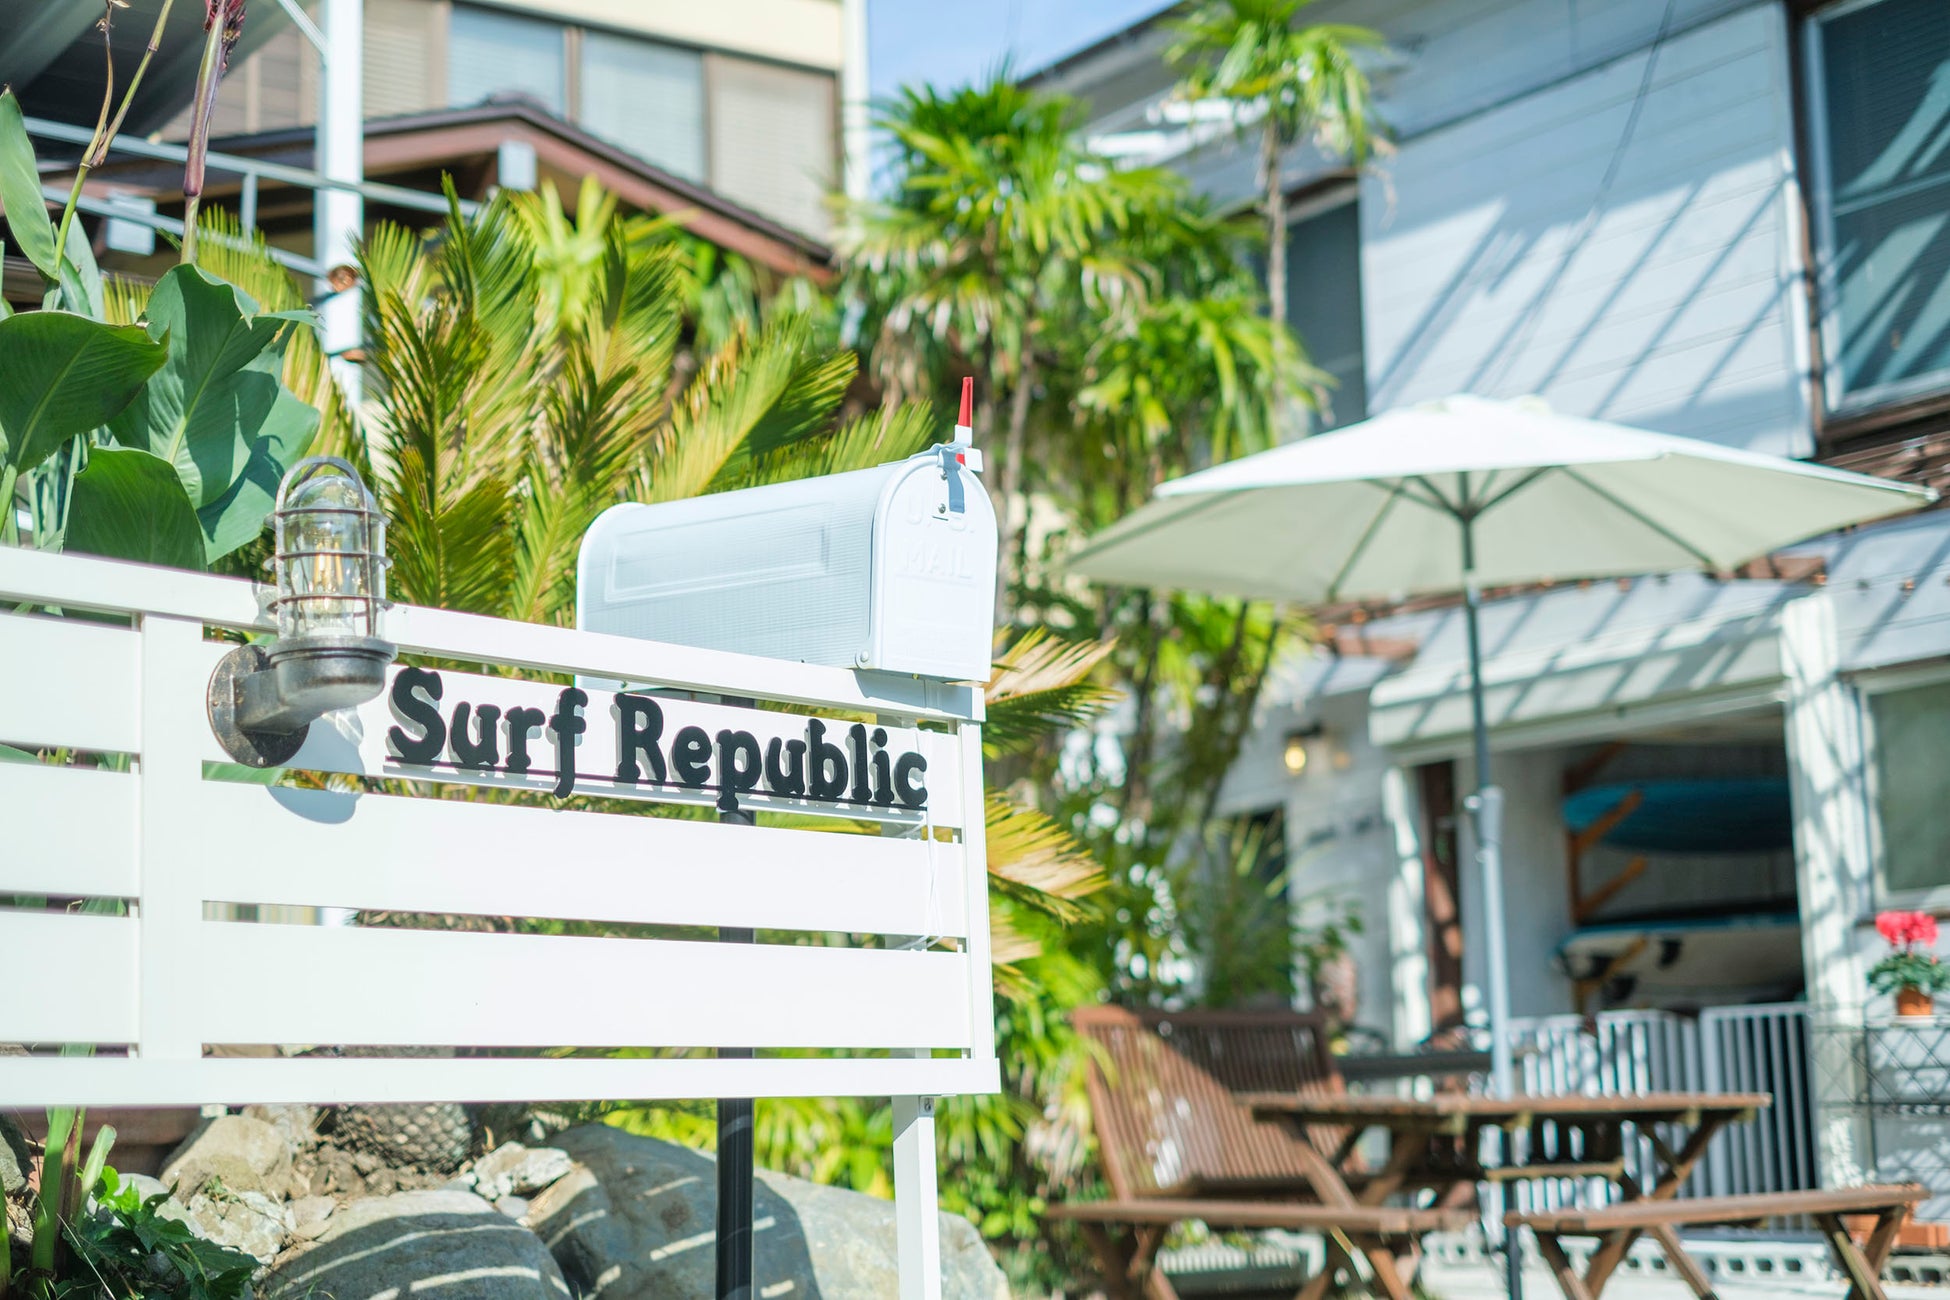 Surf Republic 湯河原吉浜海岸